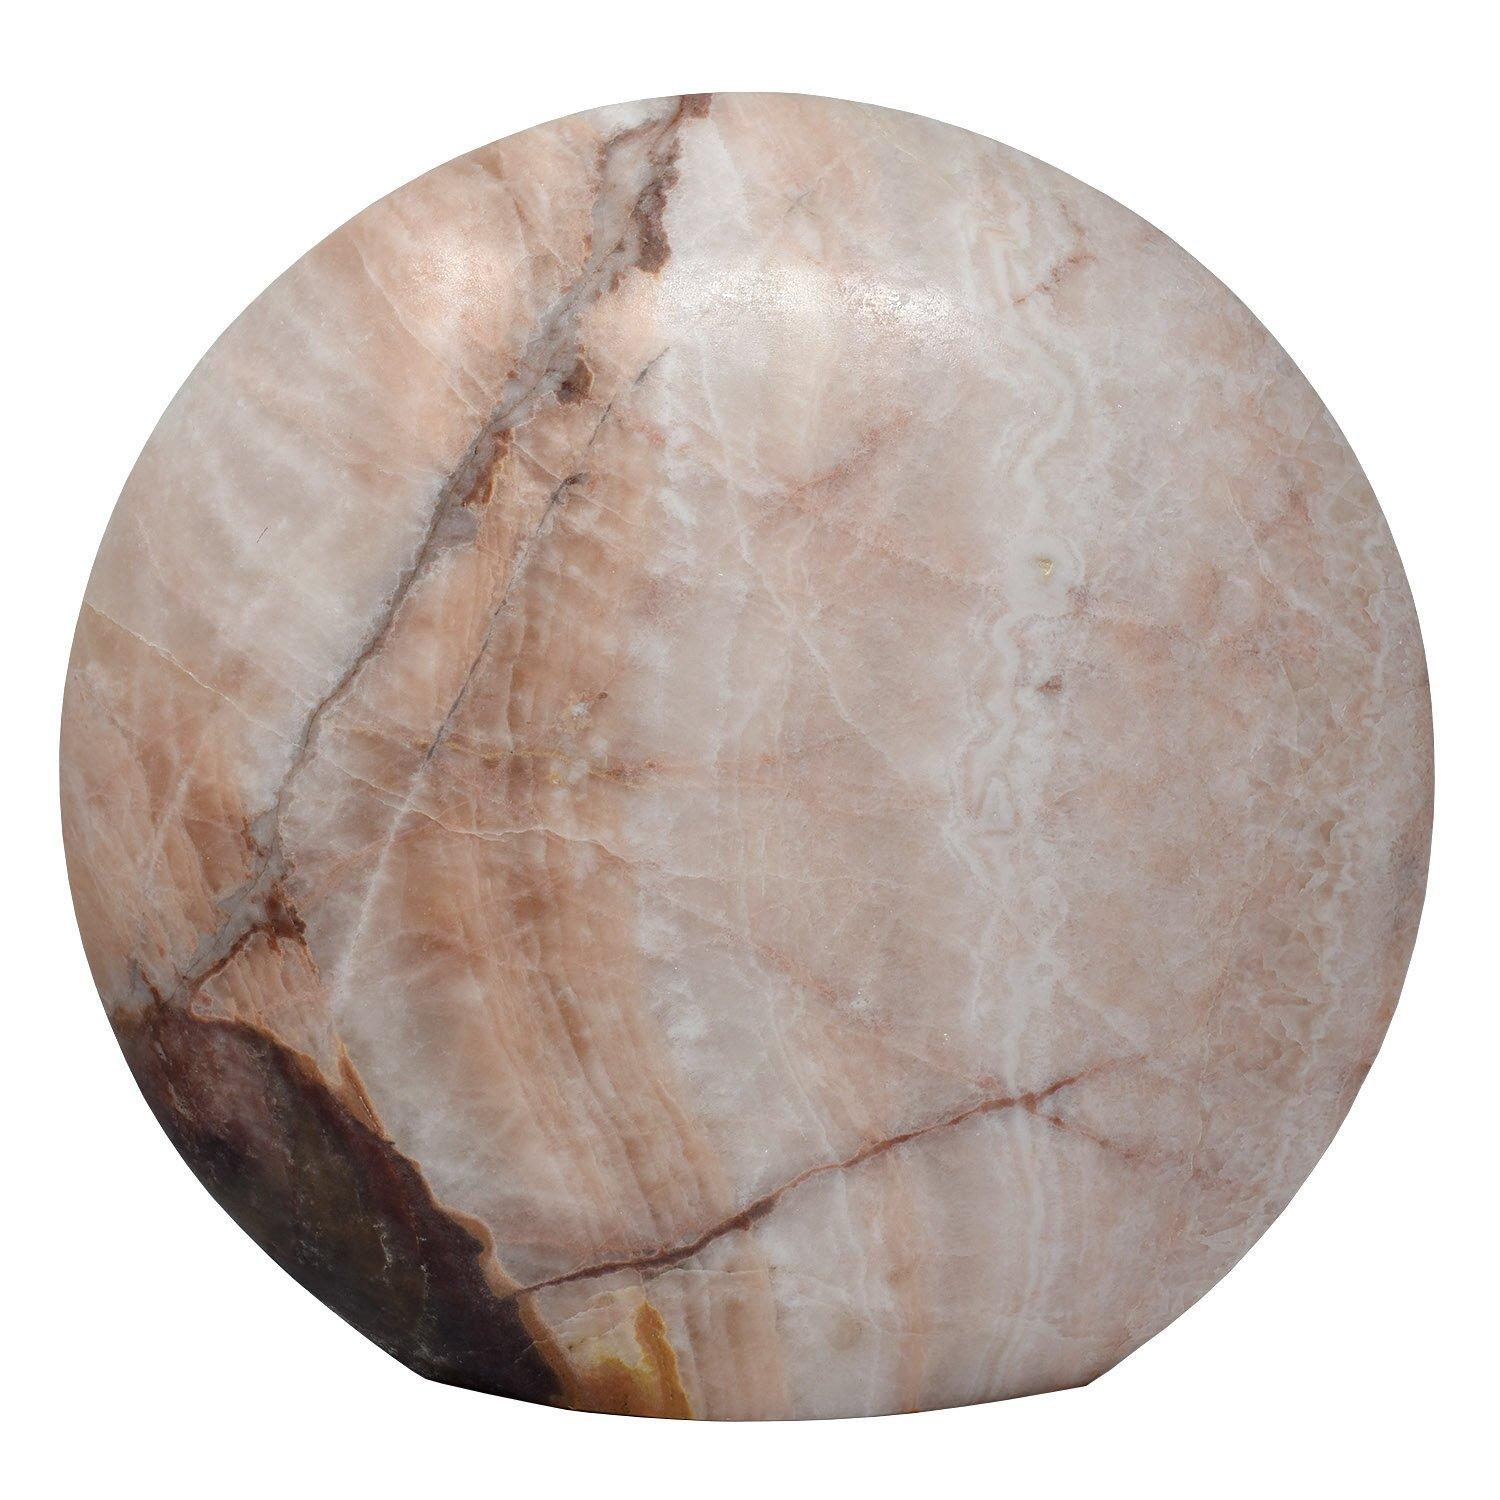 Lampe de table contemporaine en onyx naturel rose, blanc et brun

Créé à partir de deux tranches épaisses d'onyx, creusées pour construire des cercles concaves, formant un creux pour le bulbe. Les deux côtés sont reliés entre eux de manière